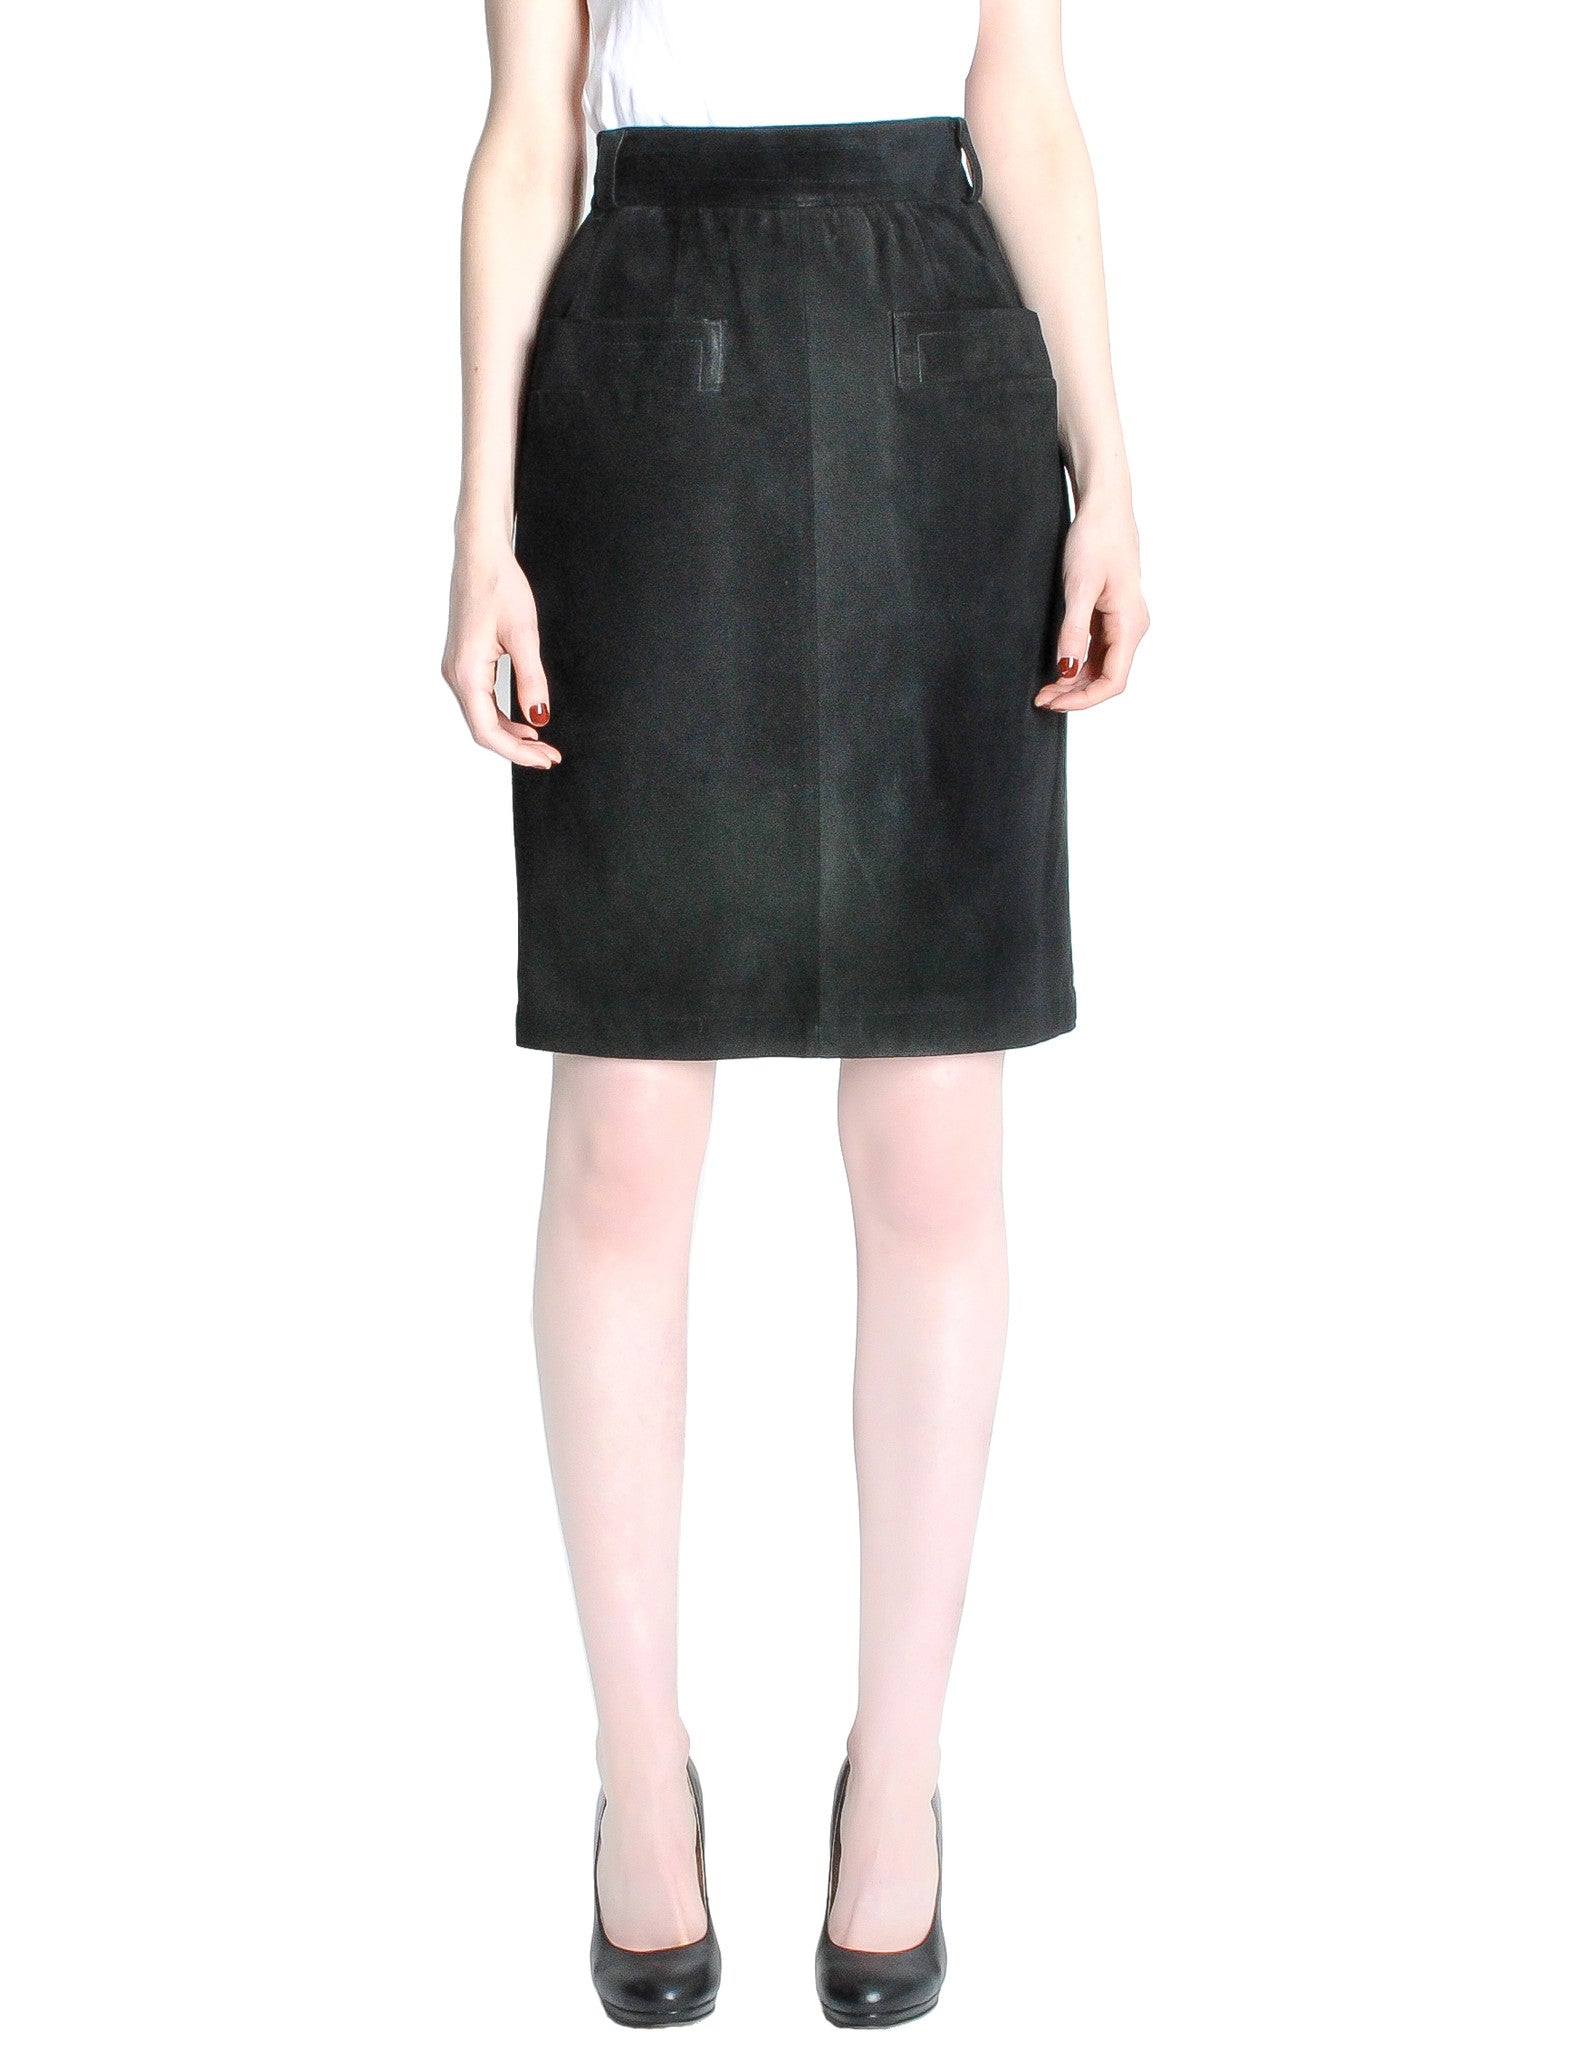 Saint Laurent Rive Gauche Vintage Black Suede Skirt